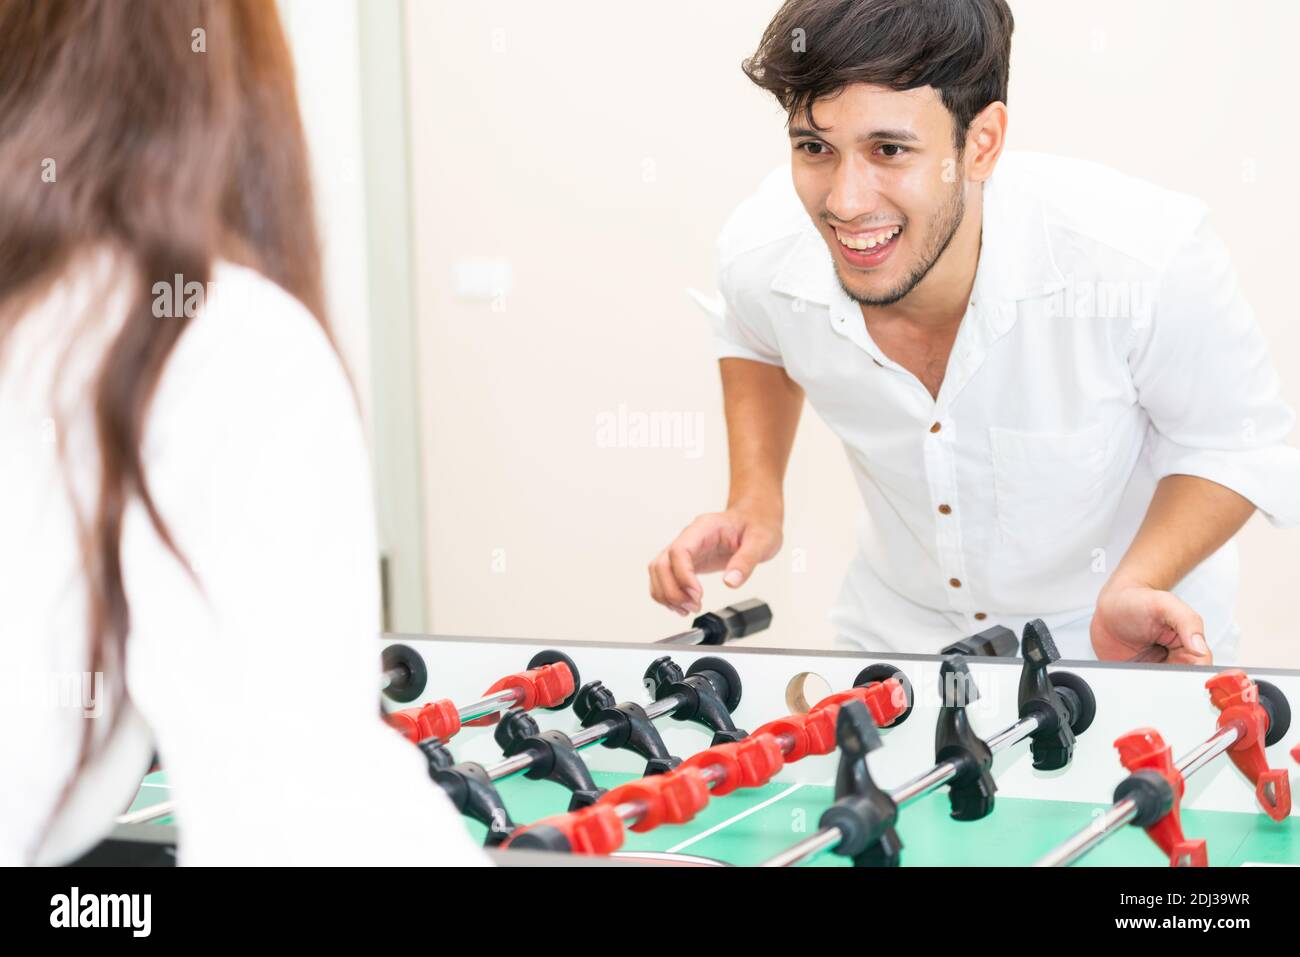 Glückliche junge Mann spielt Tischkicker Fußball mit Freundin. Paar Freizeit und Lifestyle. Stockfoto